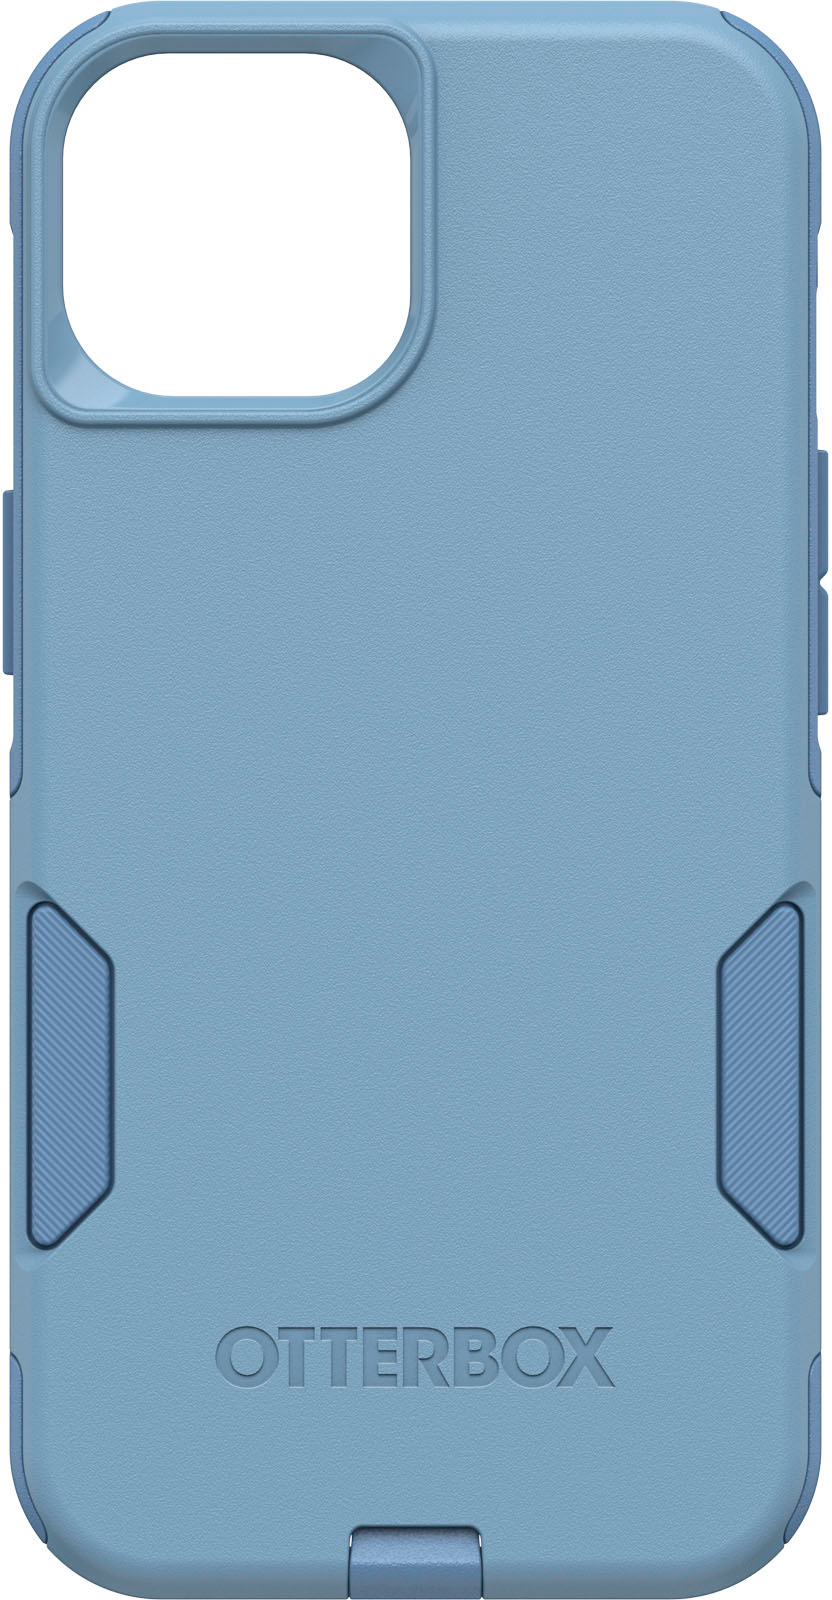 Blue Apple AirTag Case  OtterBox Sleek Case for AirTag